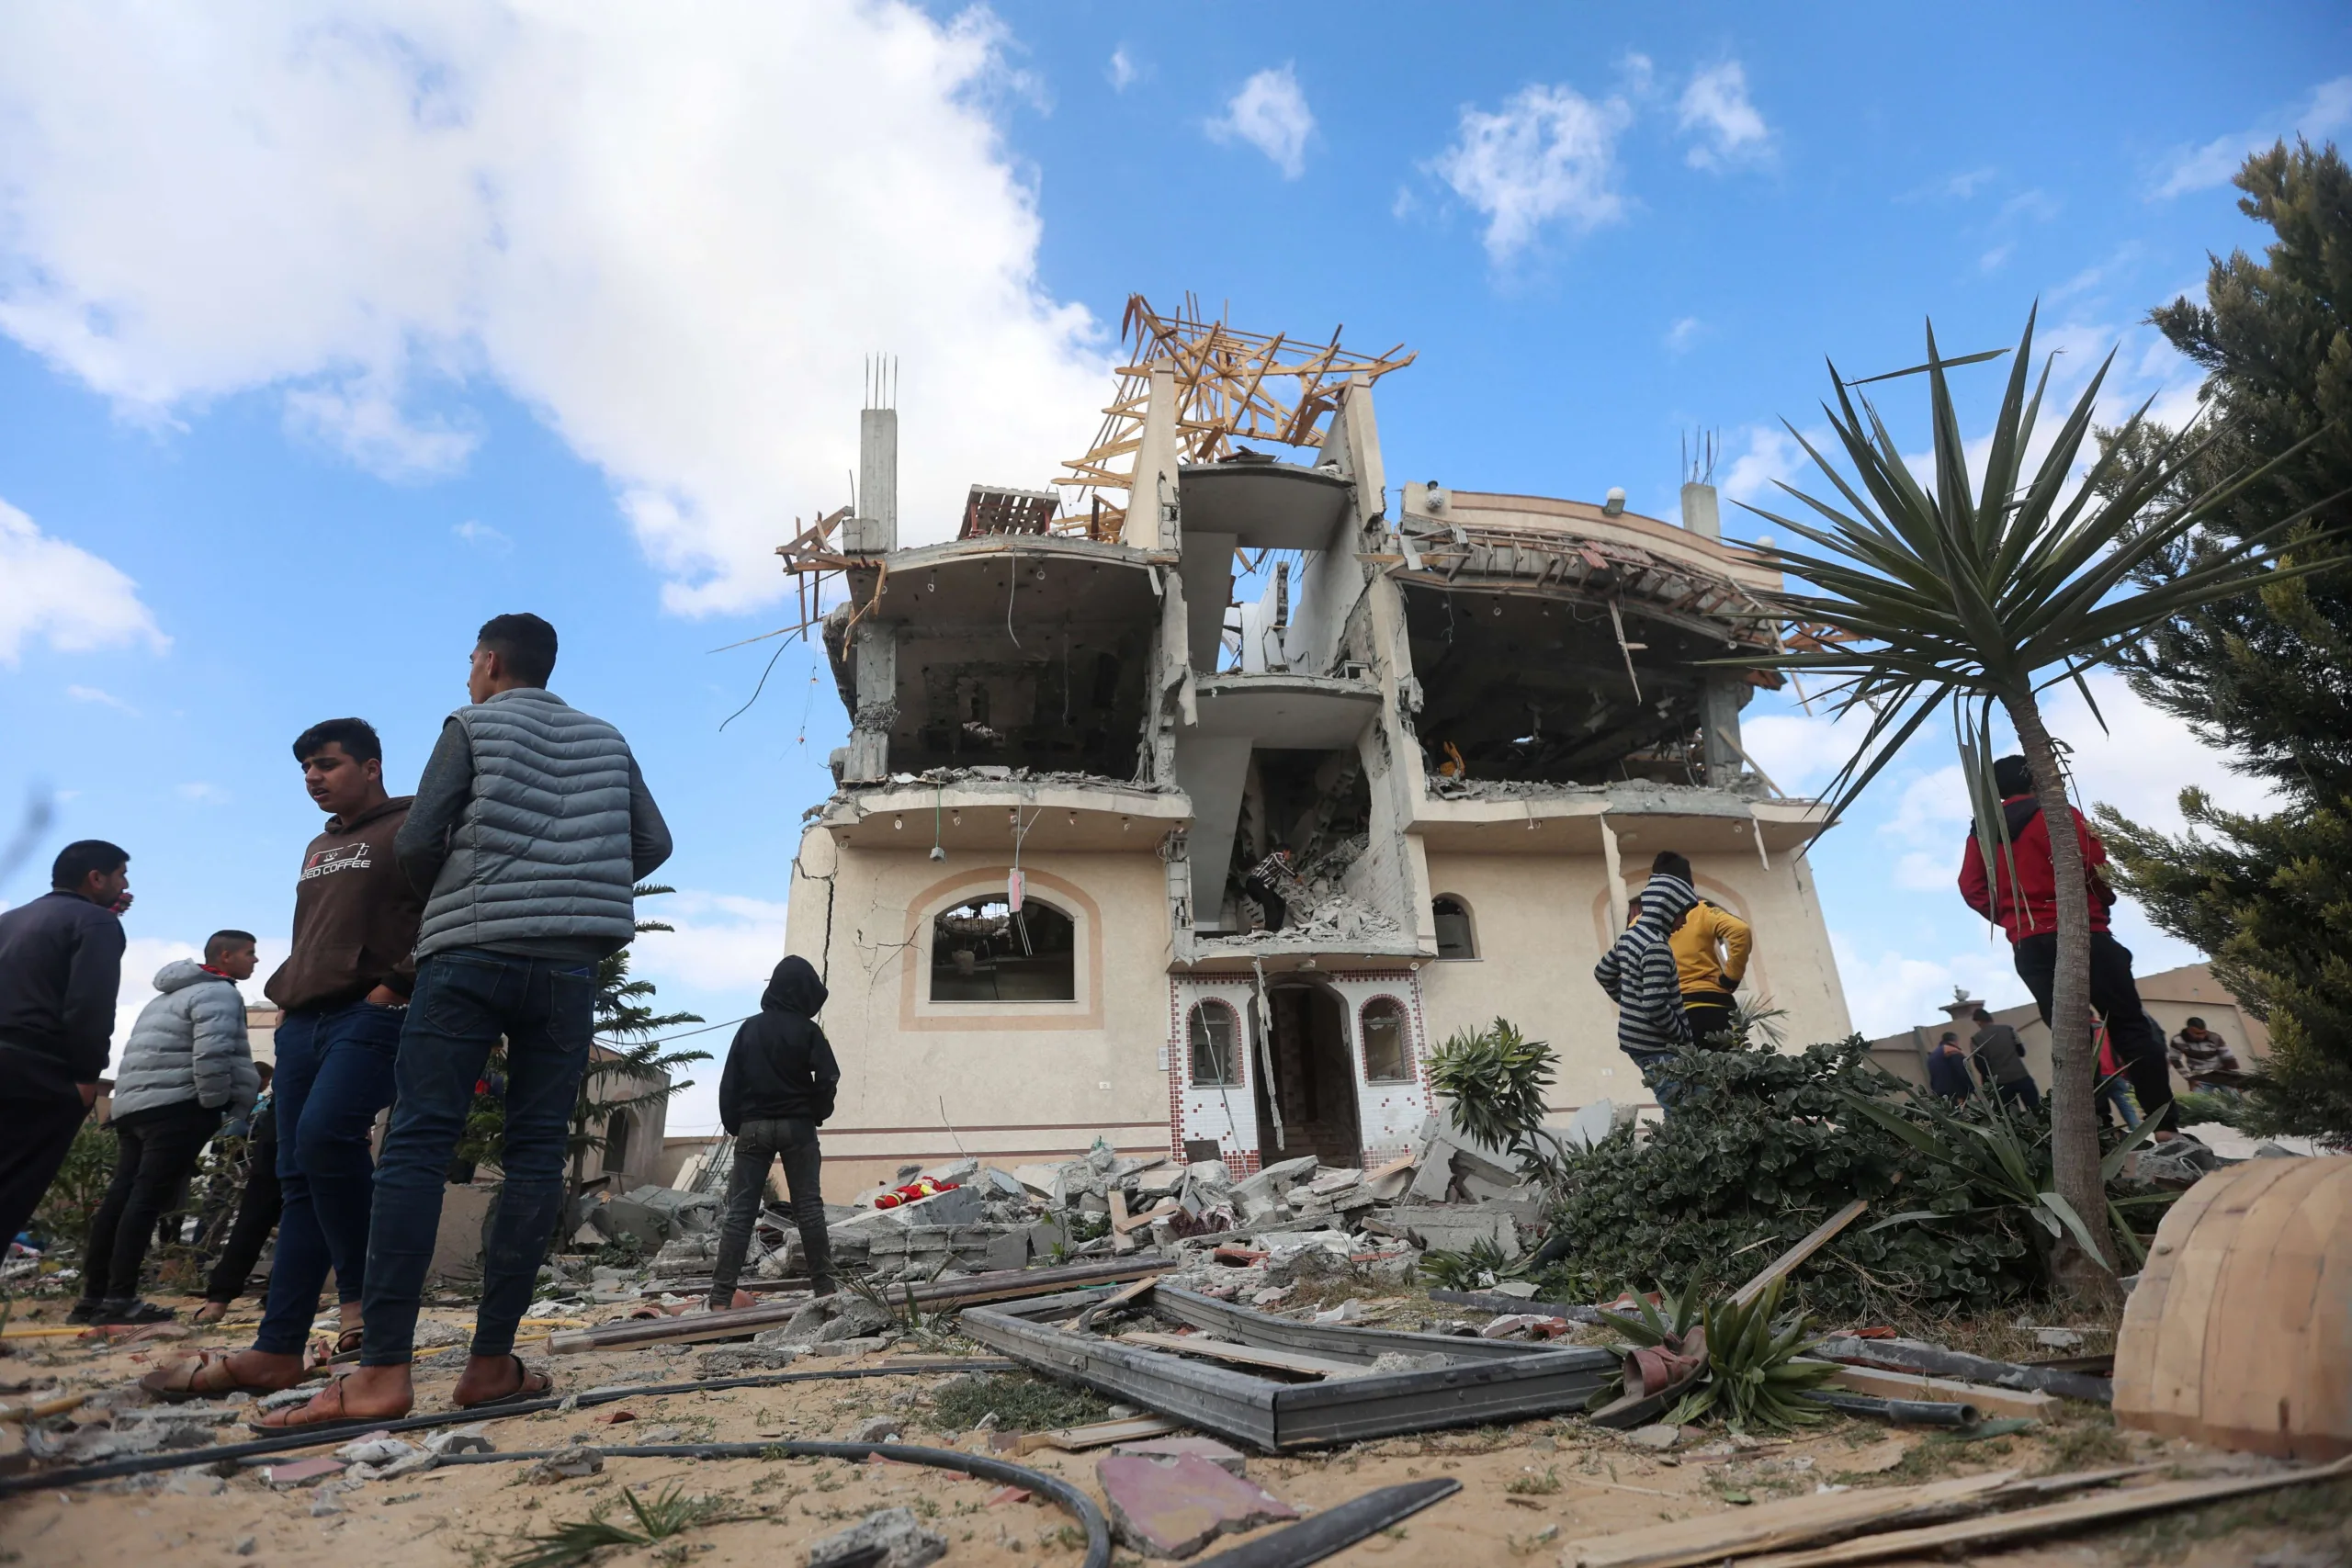 França trabalhará em nova resolução da ONU para cessar-fogo em Gaza, diz Macron